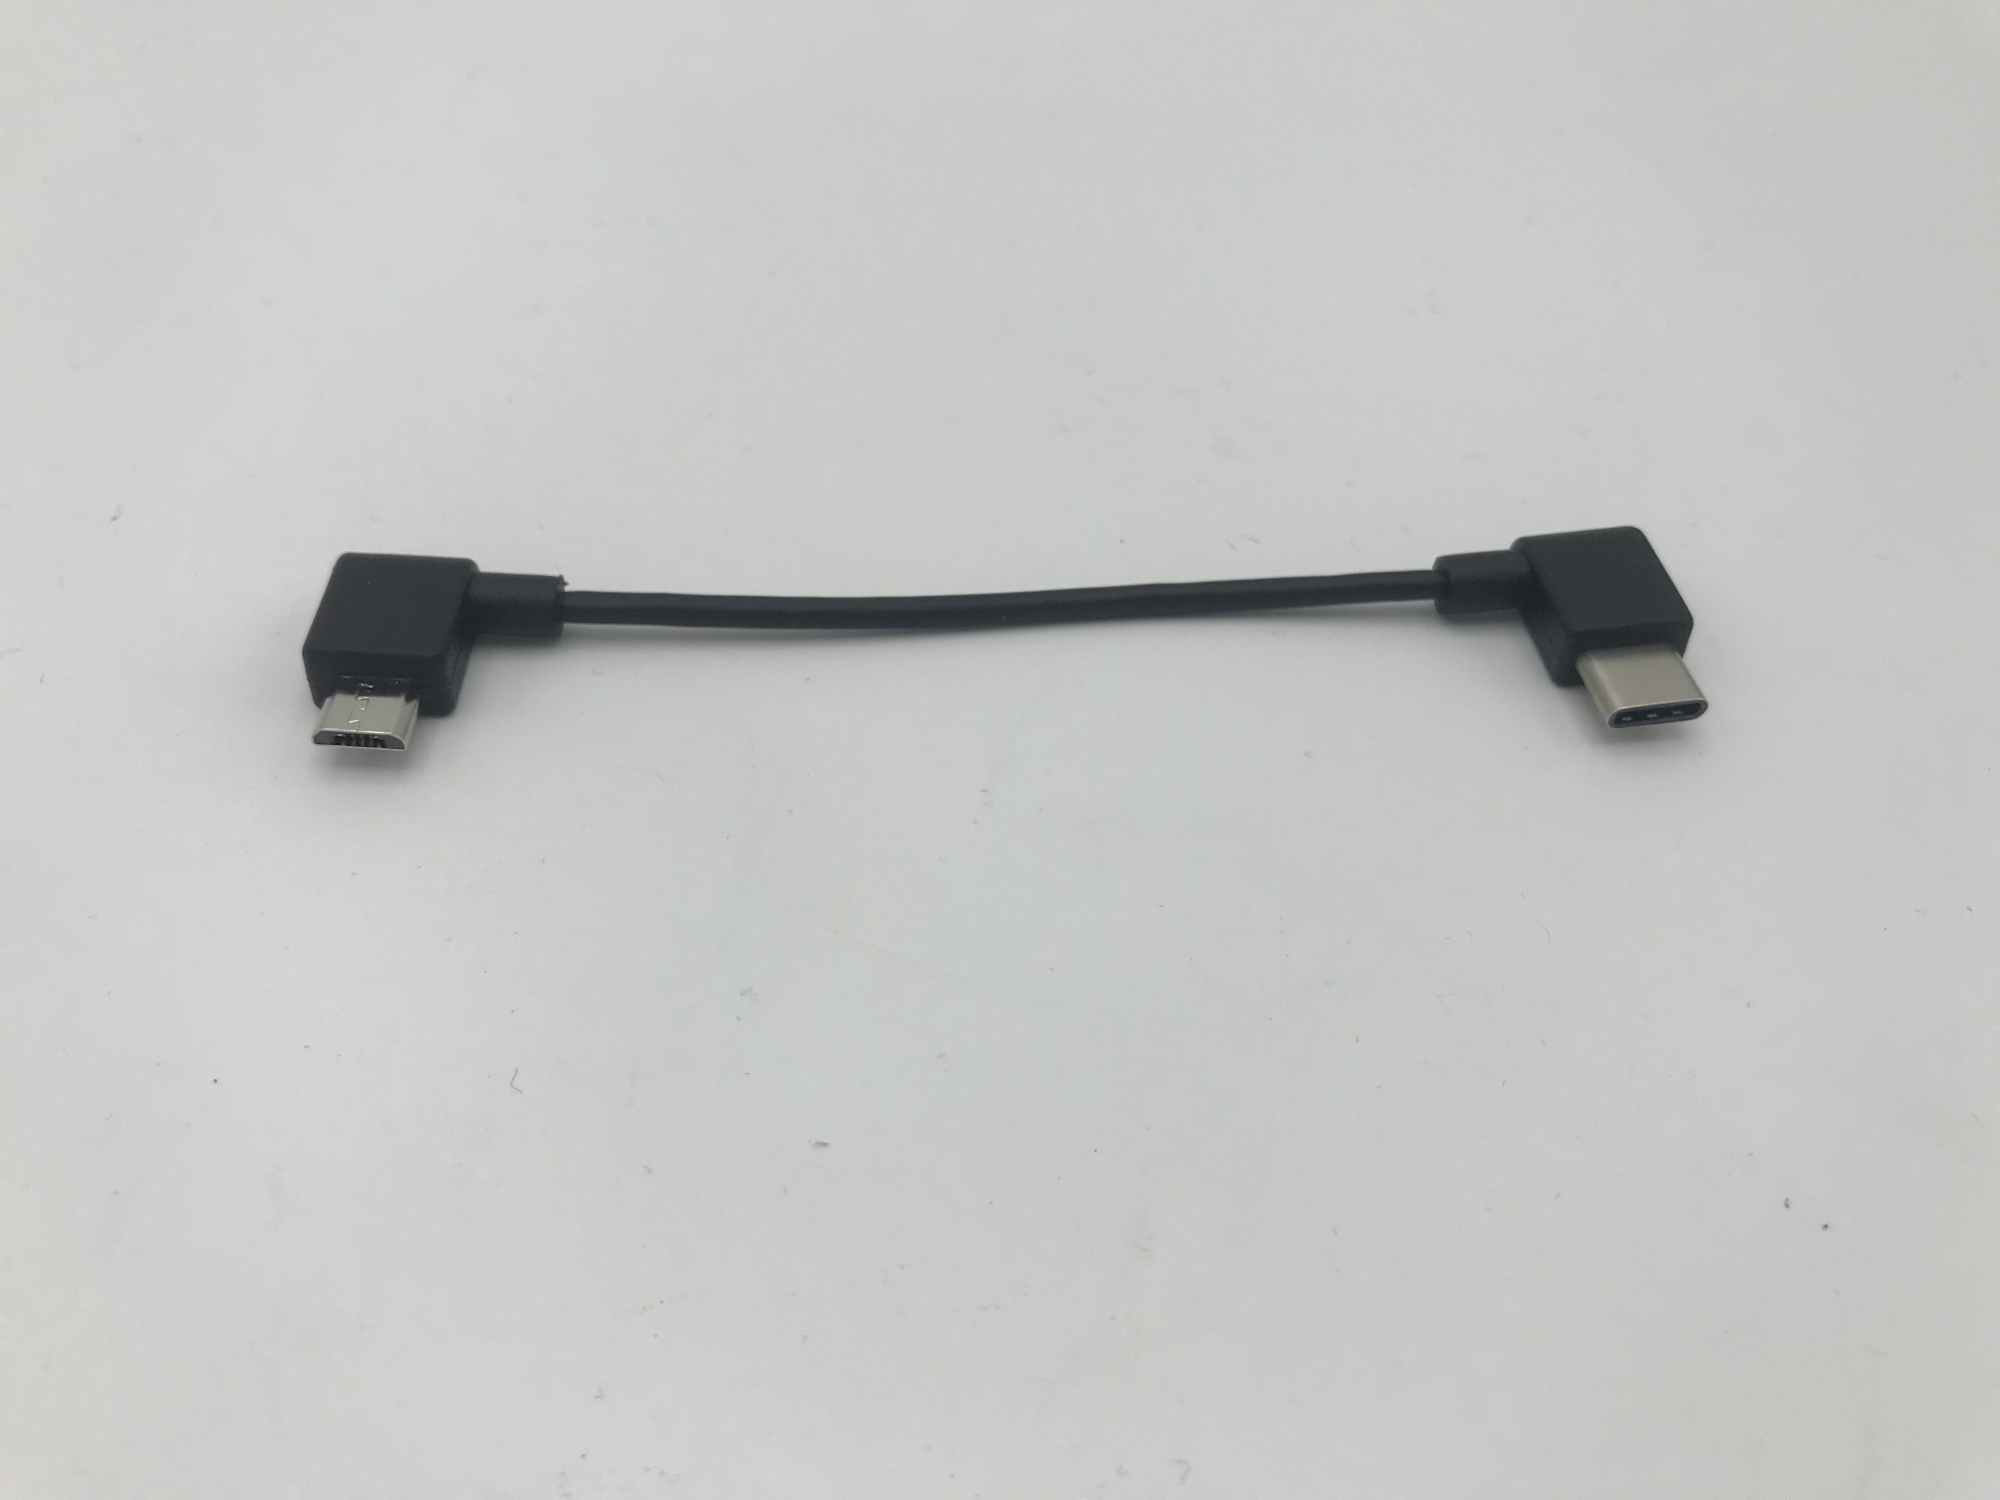 Bosch Intuvia/Nyon laadkabel van Mini USB naar USB-C 